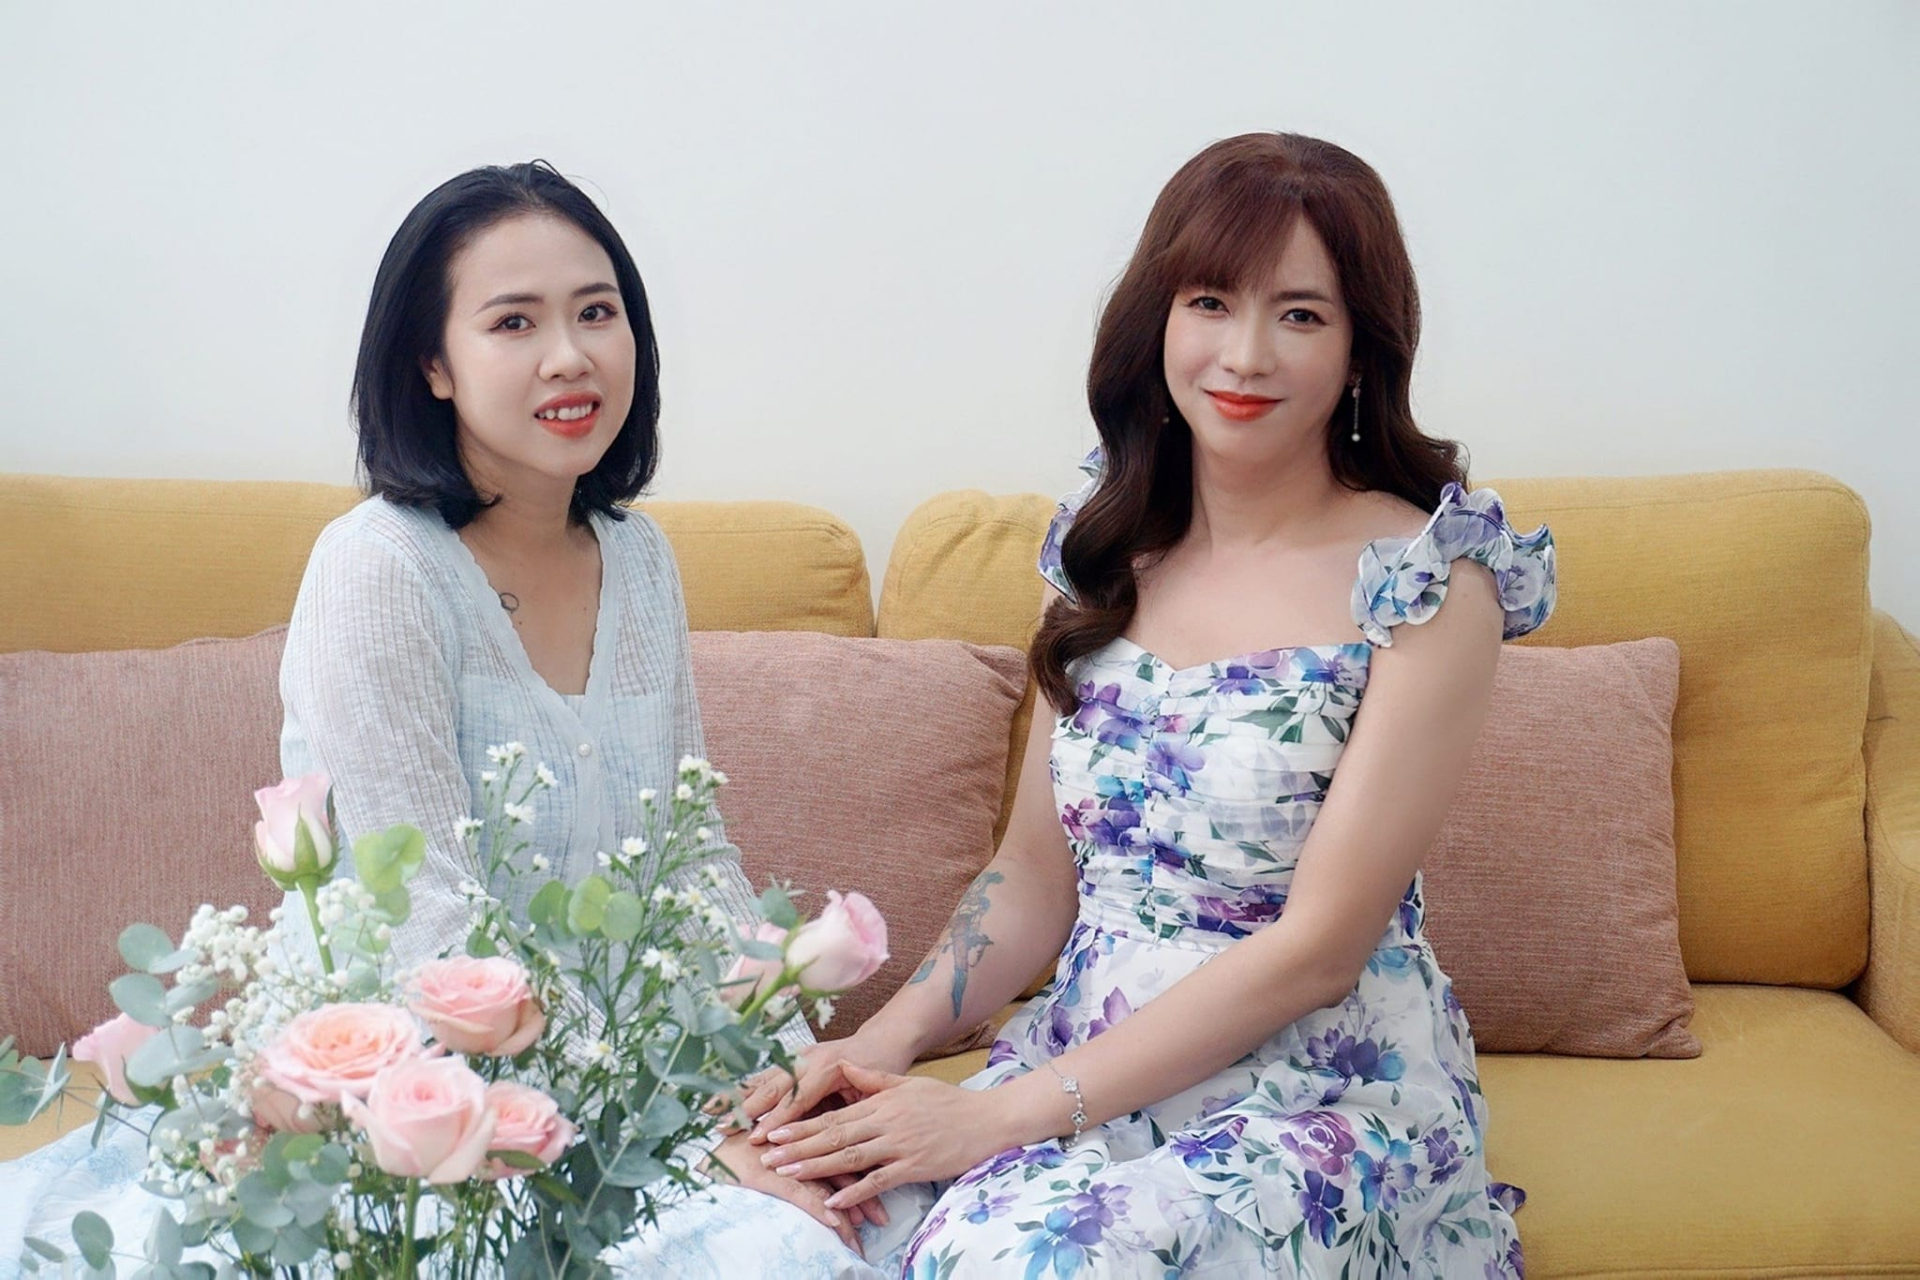 Hành trình giảm 17kg của người chồng chuyển giới sau 8 năm lấy vợ ở Đà Nẵng - ảnh 10